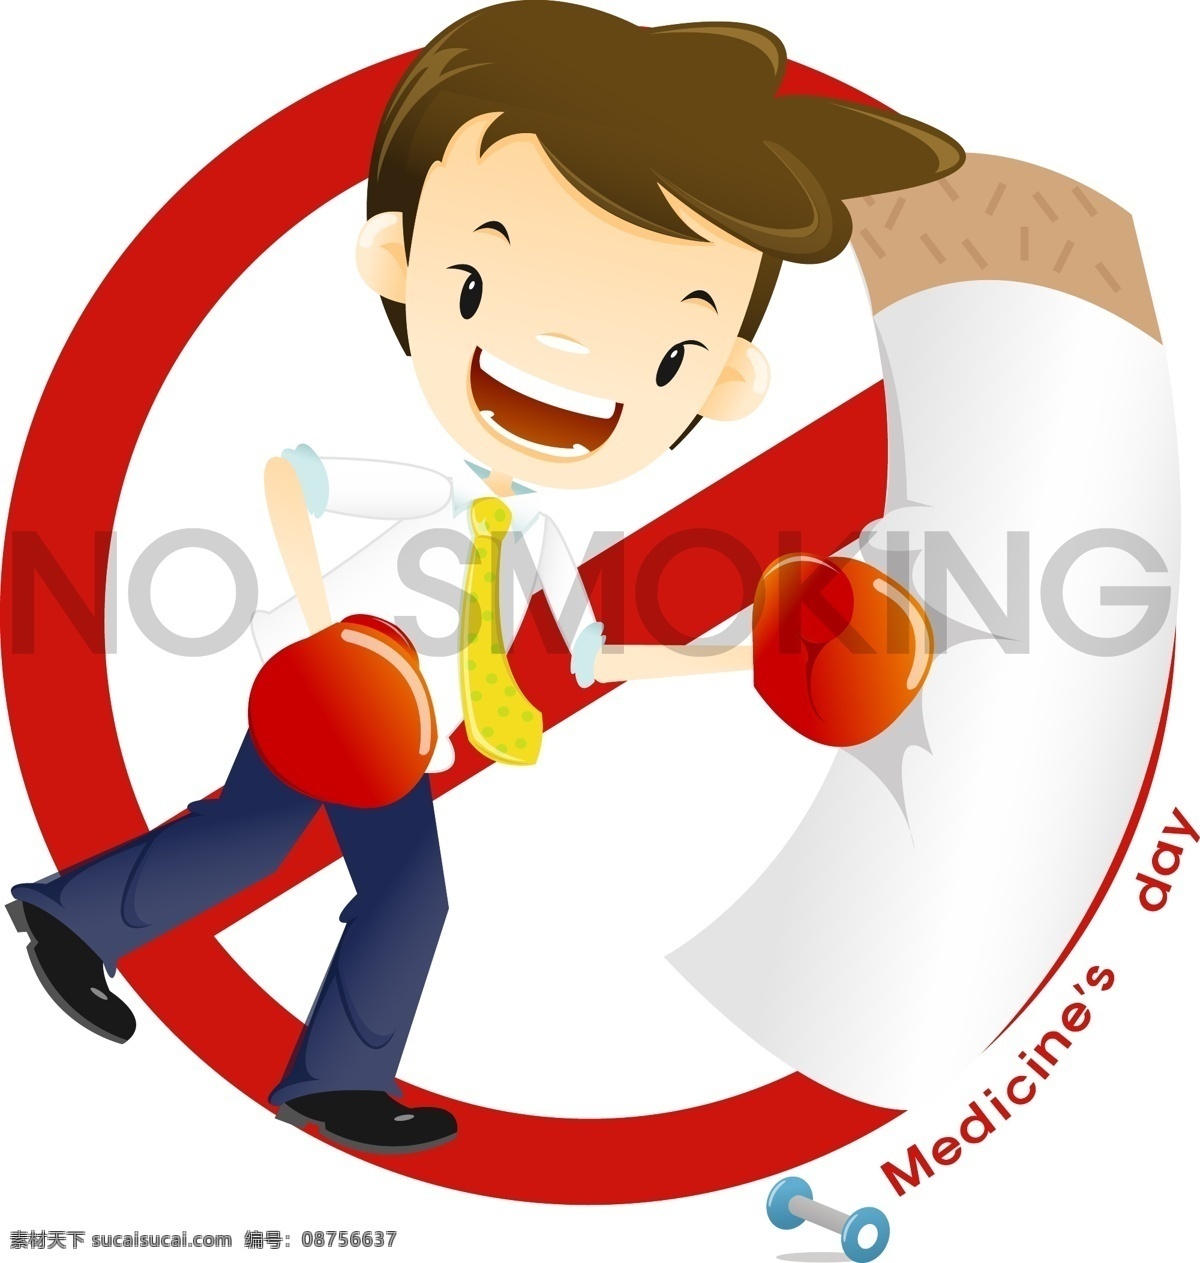 卡通 人物 禁止 吸烟 标志 矢量 卡通元素 矢量素材 卡通人物 禁止吸烟 禁止吸烟标志